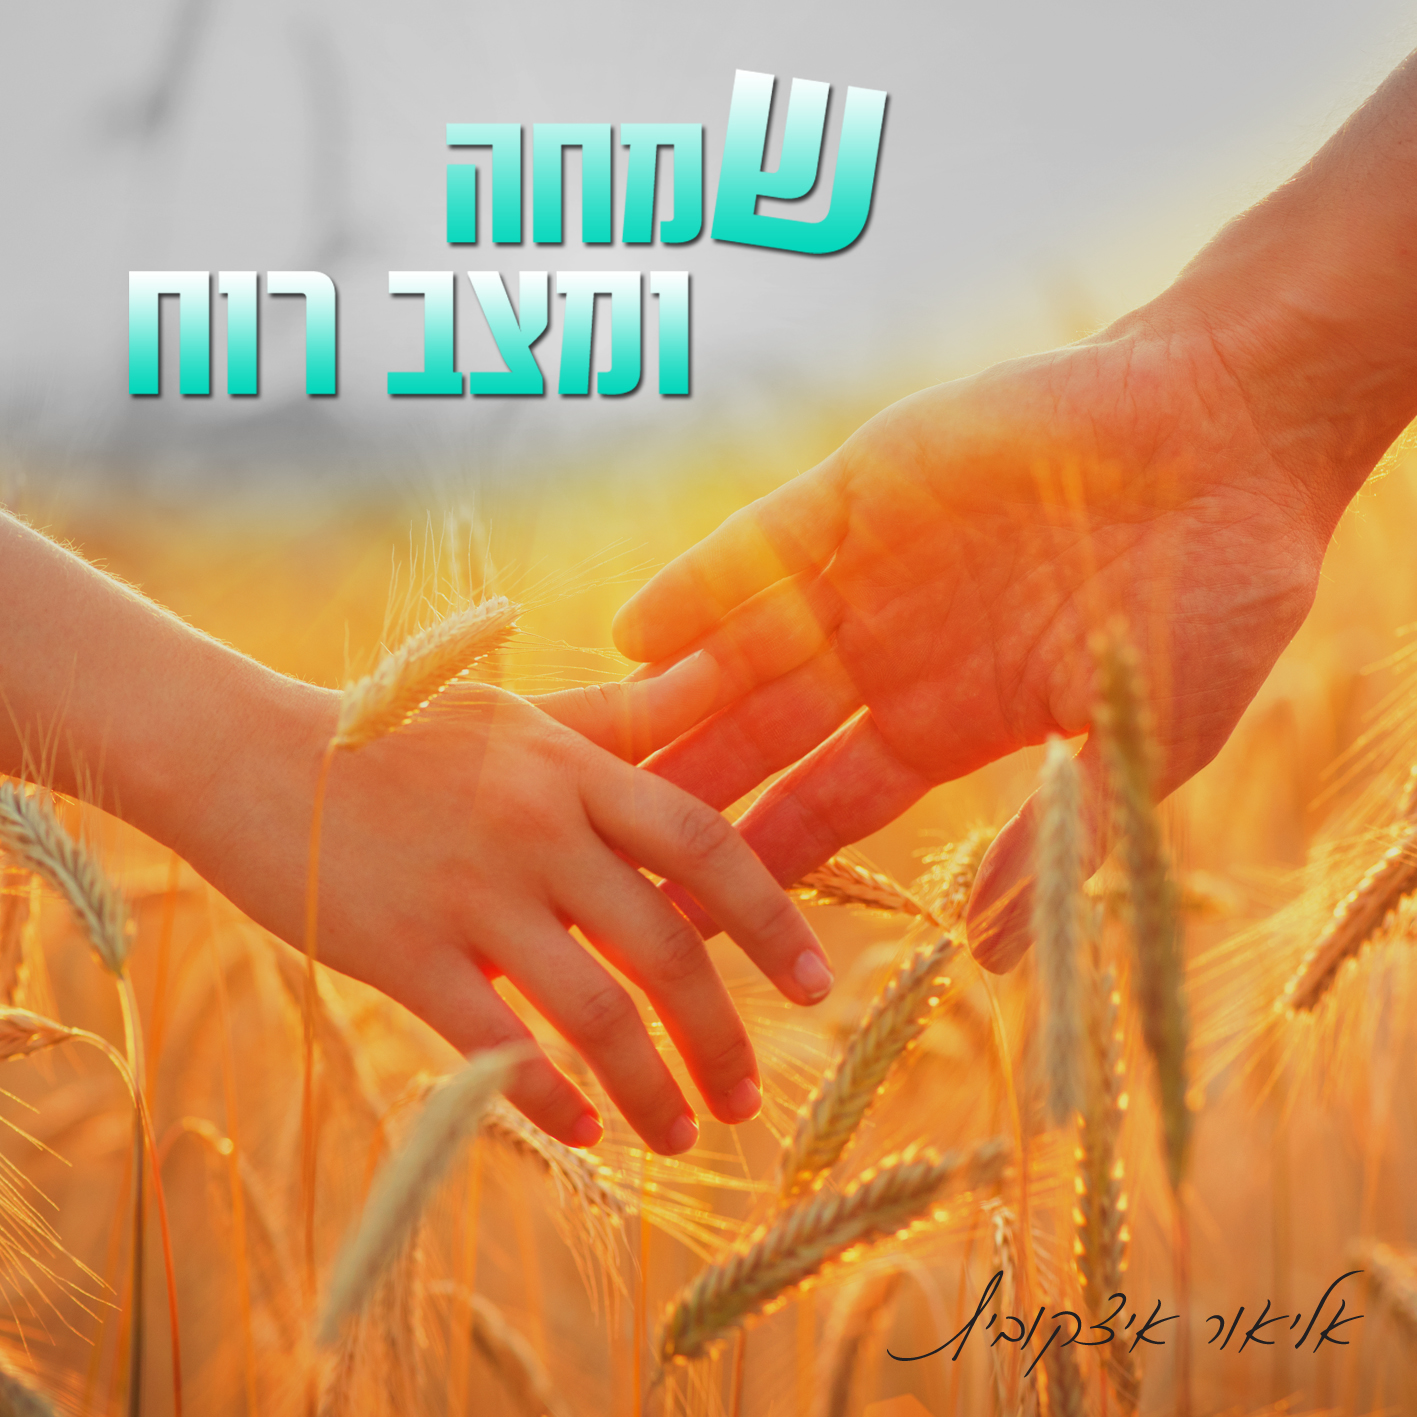 Can take my hand. Картинка пшеничное поле и руки мужчины и женщины. Зеленое пшеничное поле фото и рука девушки.